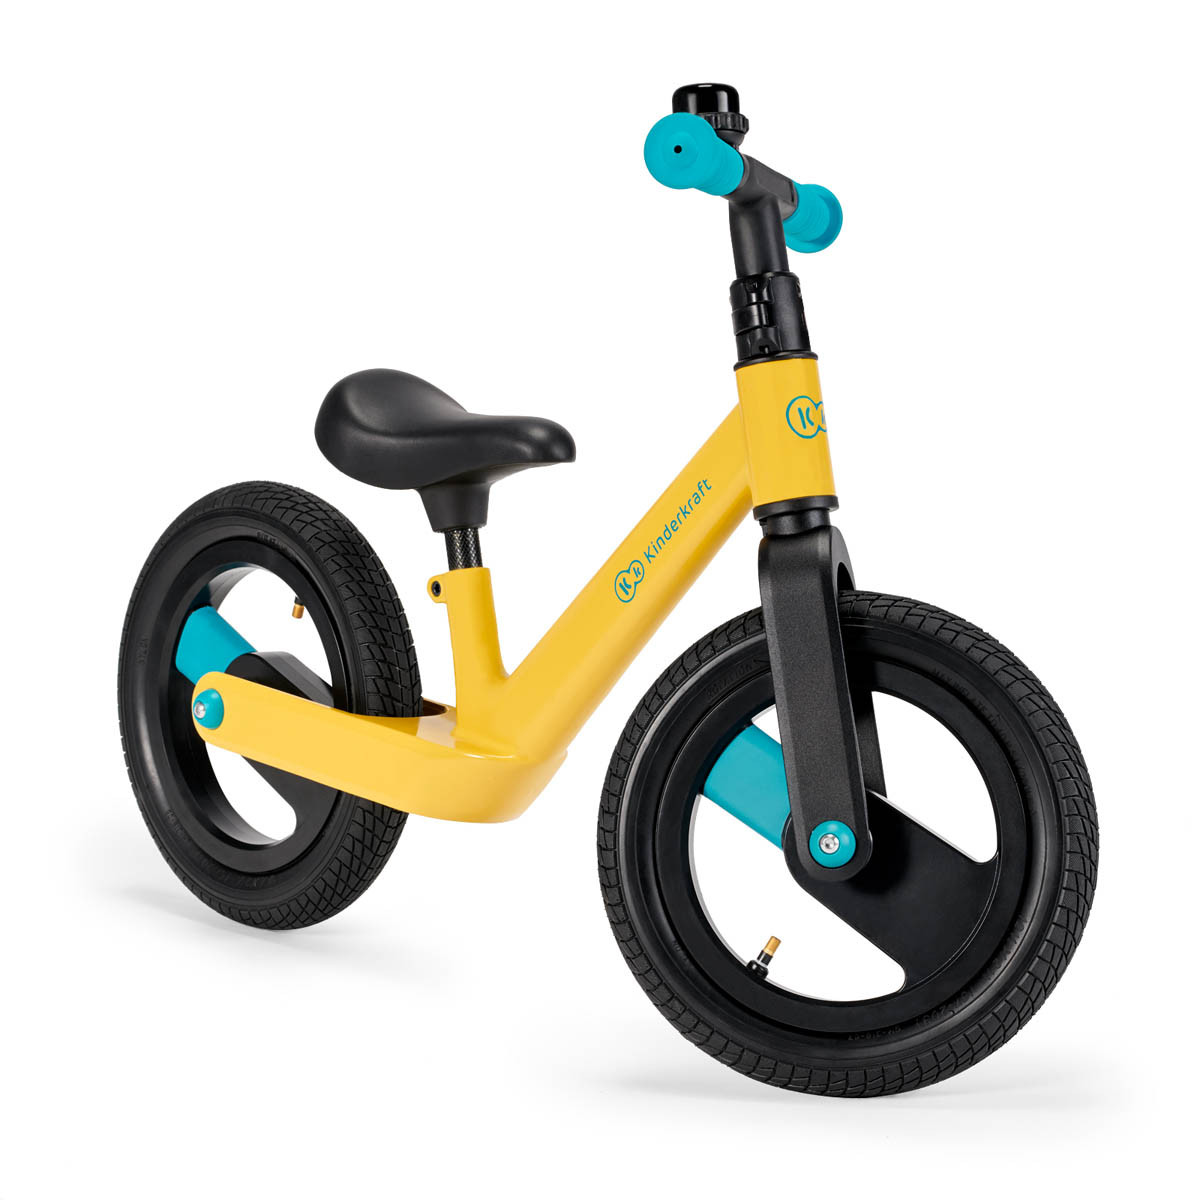 Kinderkraft goswift bicicleta de equilibrio con estilo deportivo que desarrolla las habilidades motoras de tu niño.